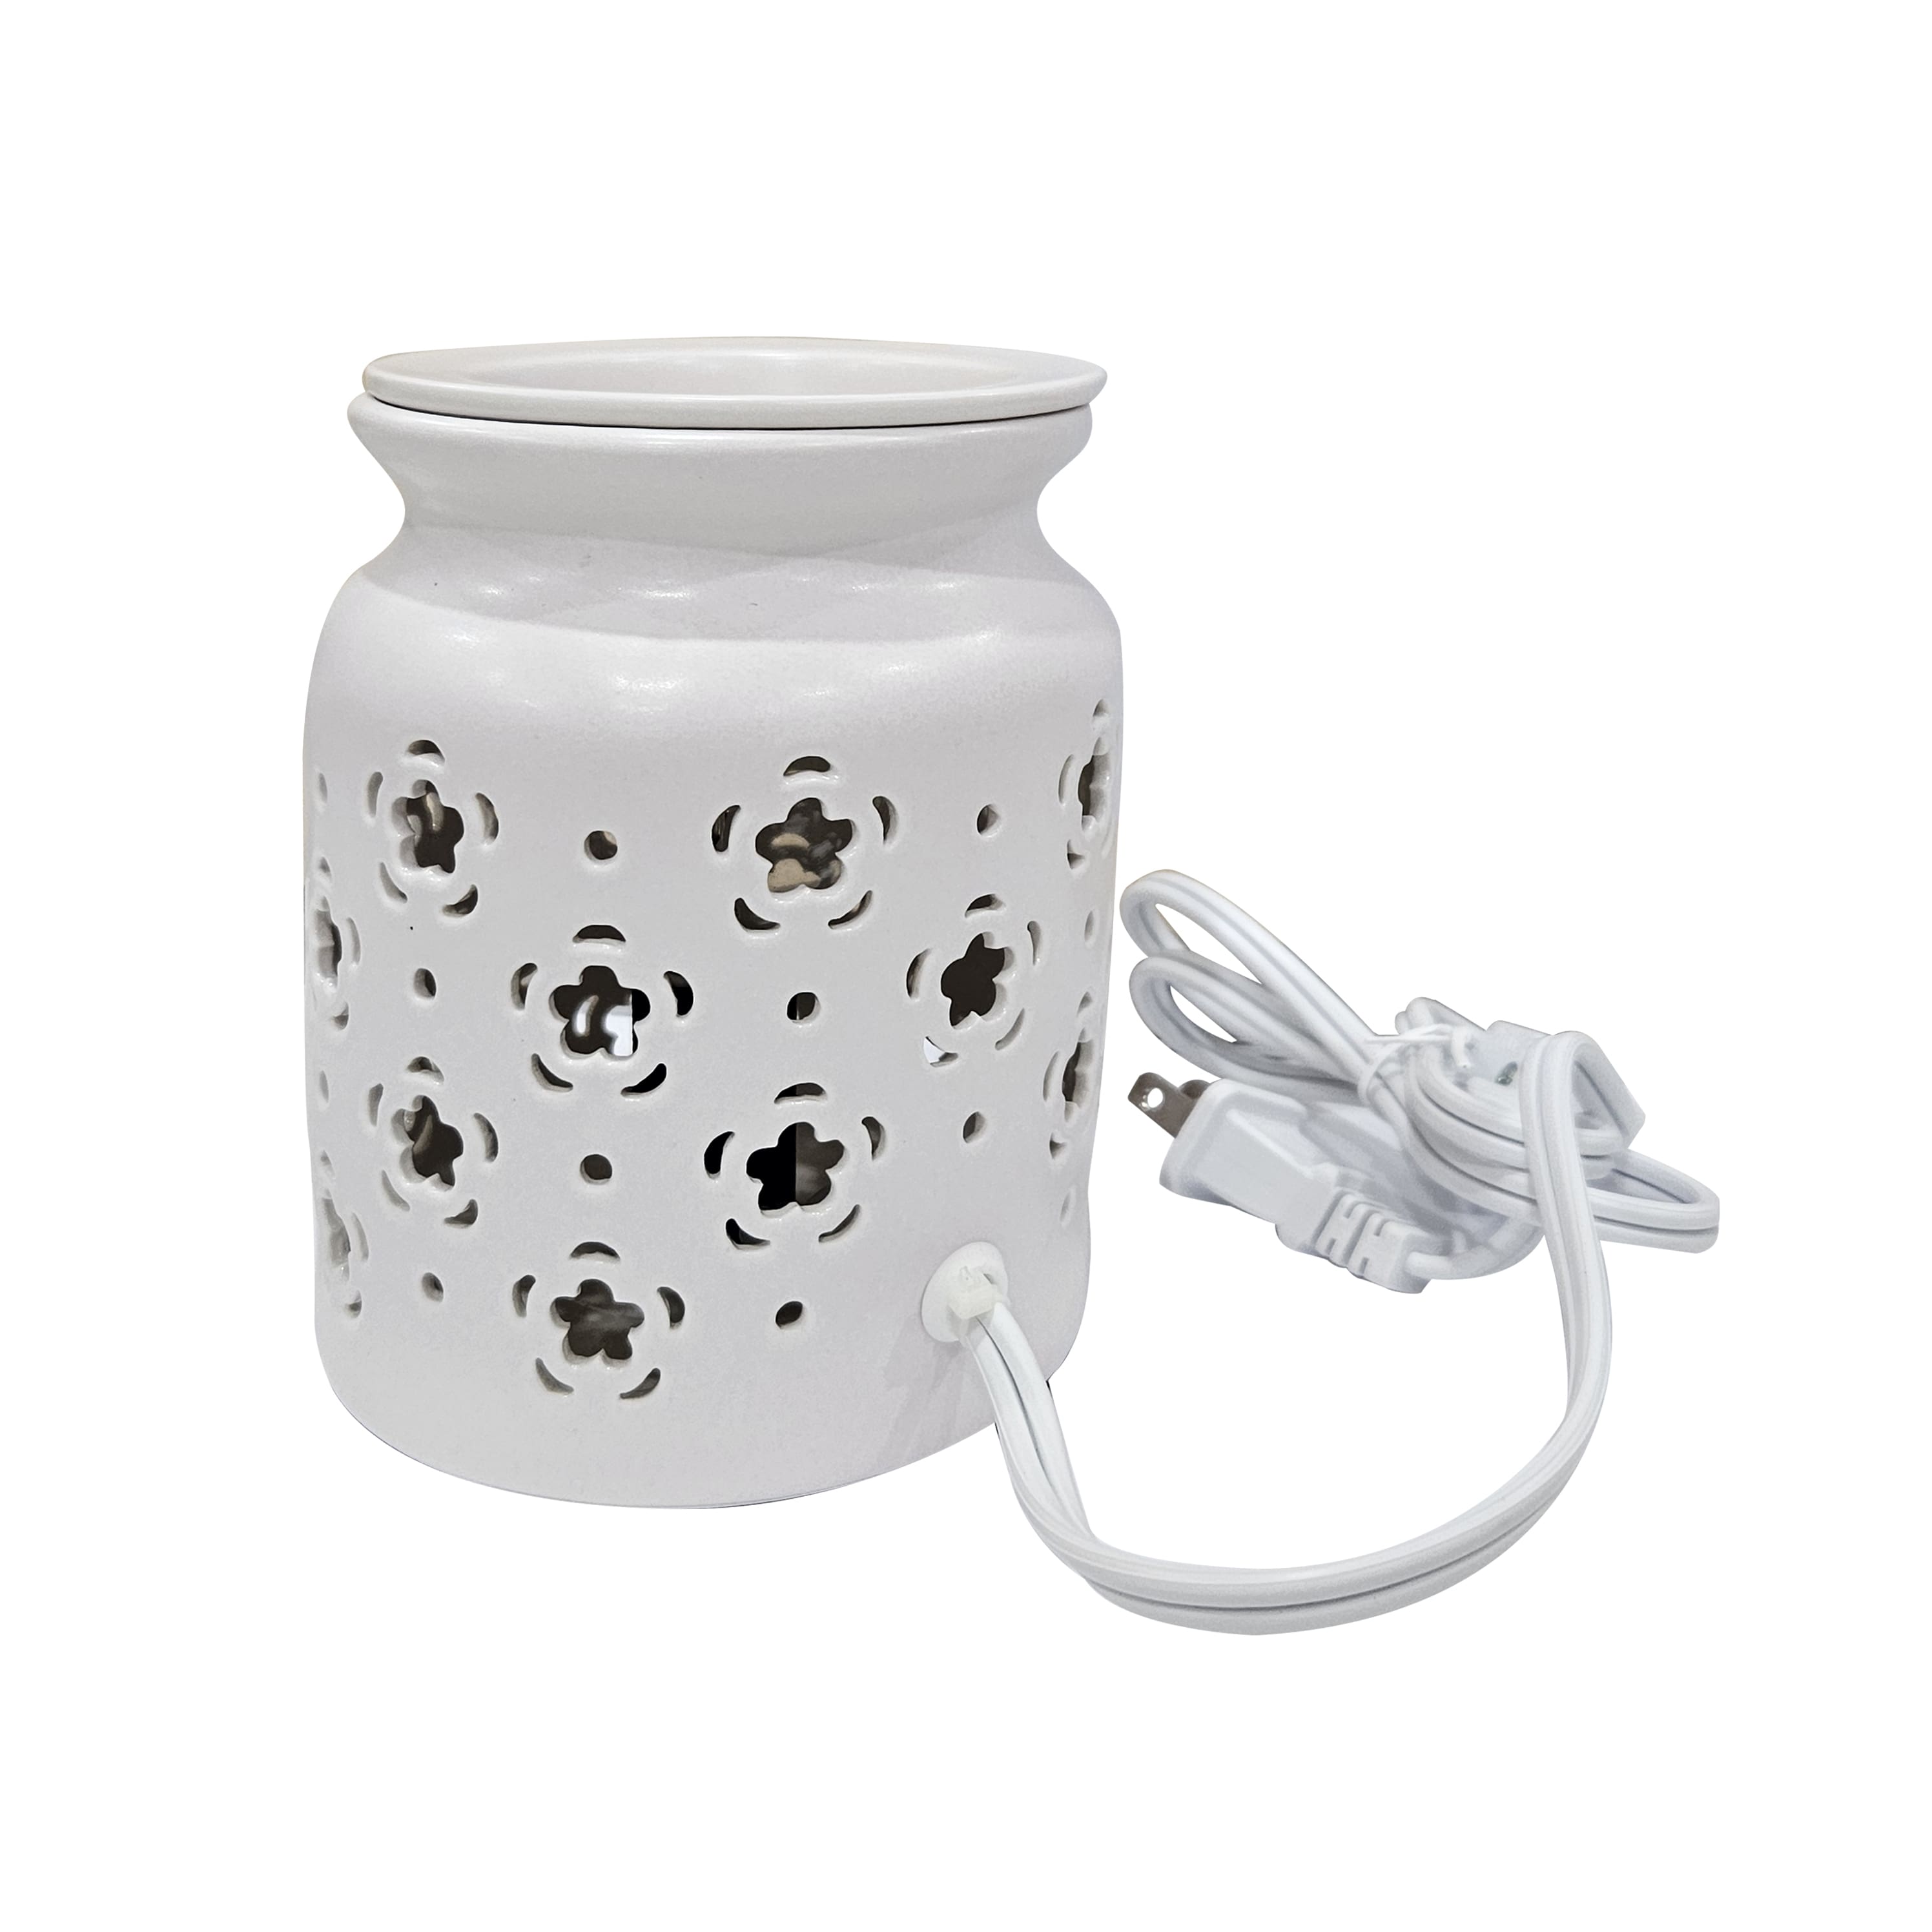 5.4&#x22; Cream Flower Ceramic Wax Warmer by Ashland&#xAE;